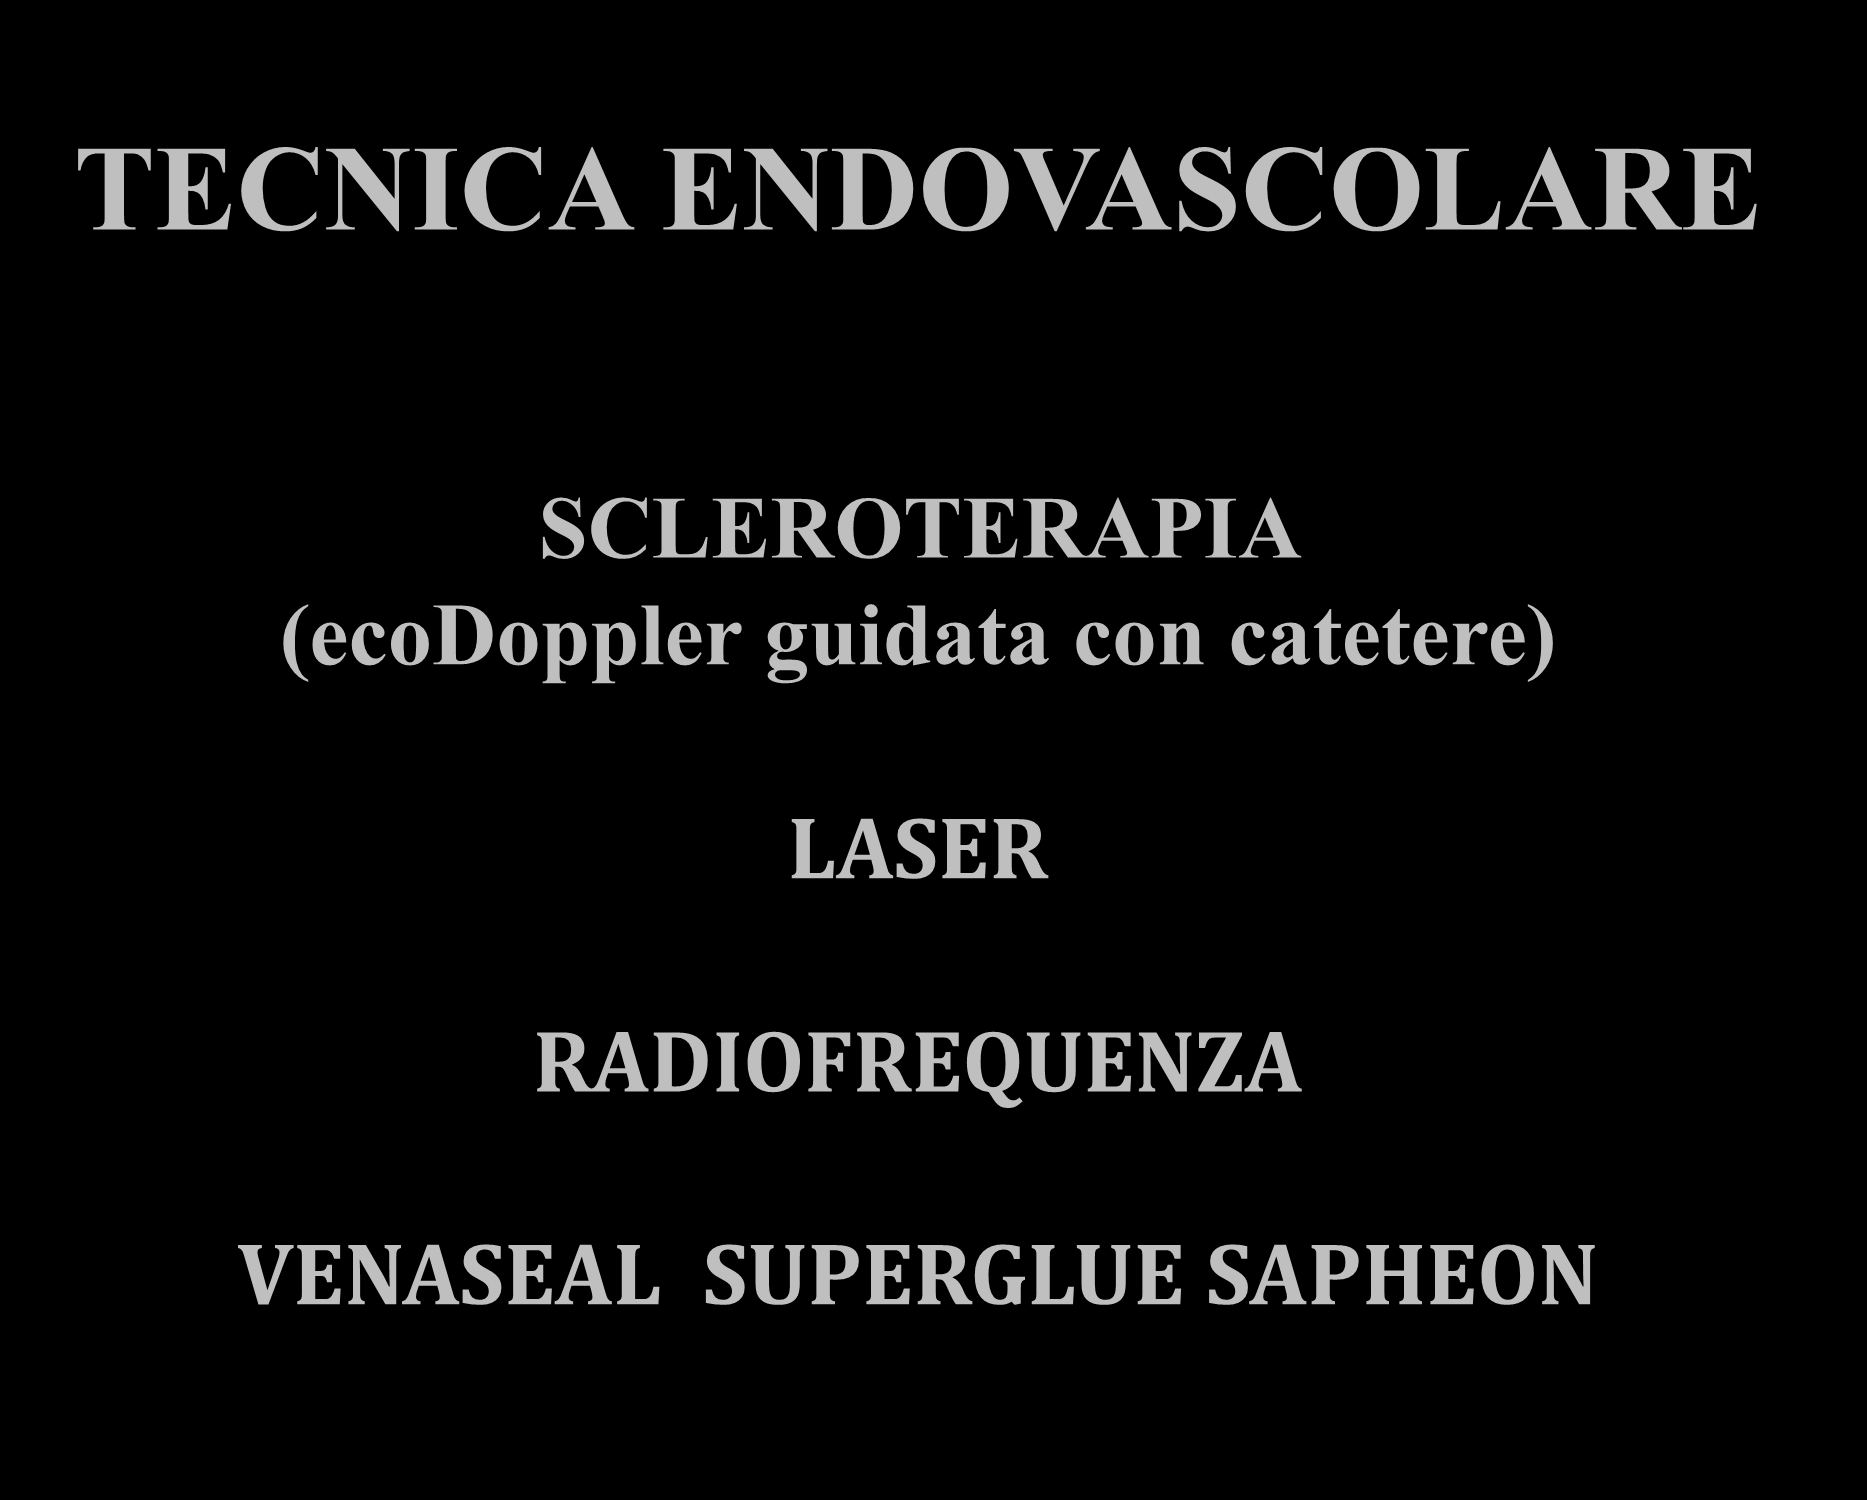 TECNICA ENDOVASCOLARE SCLEROTERAPIA (ecodoppler guidata